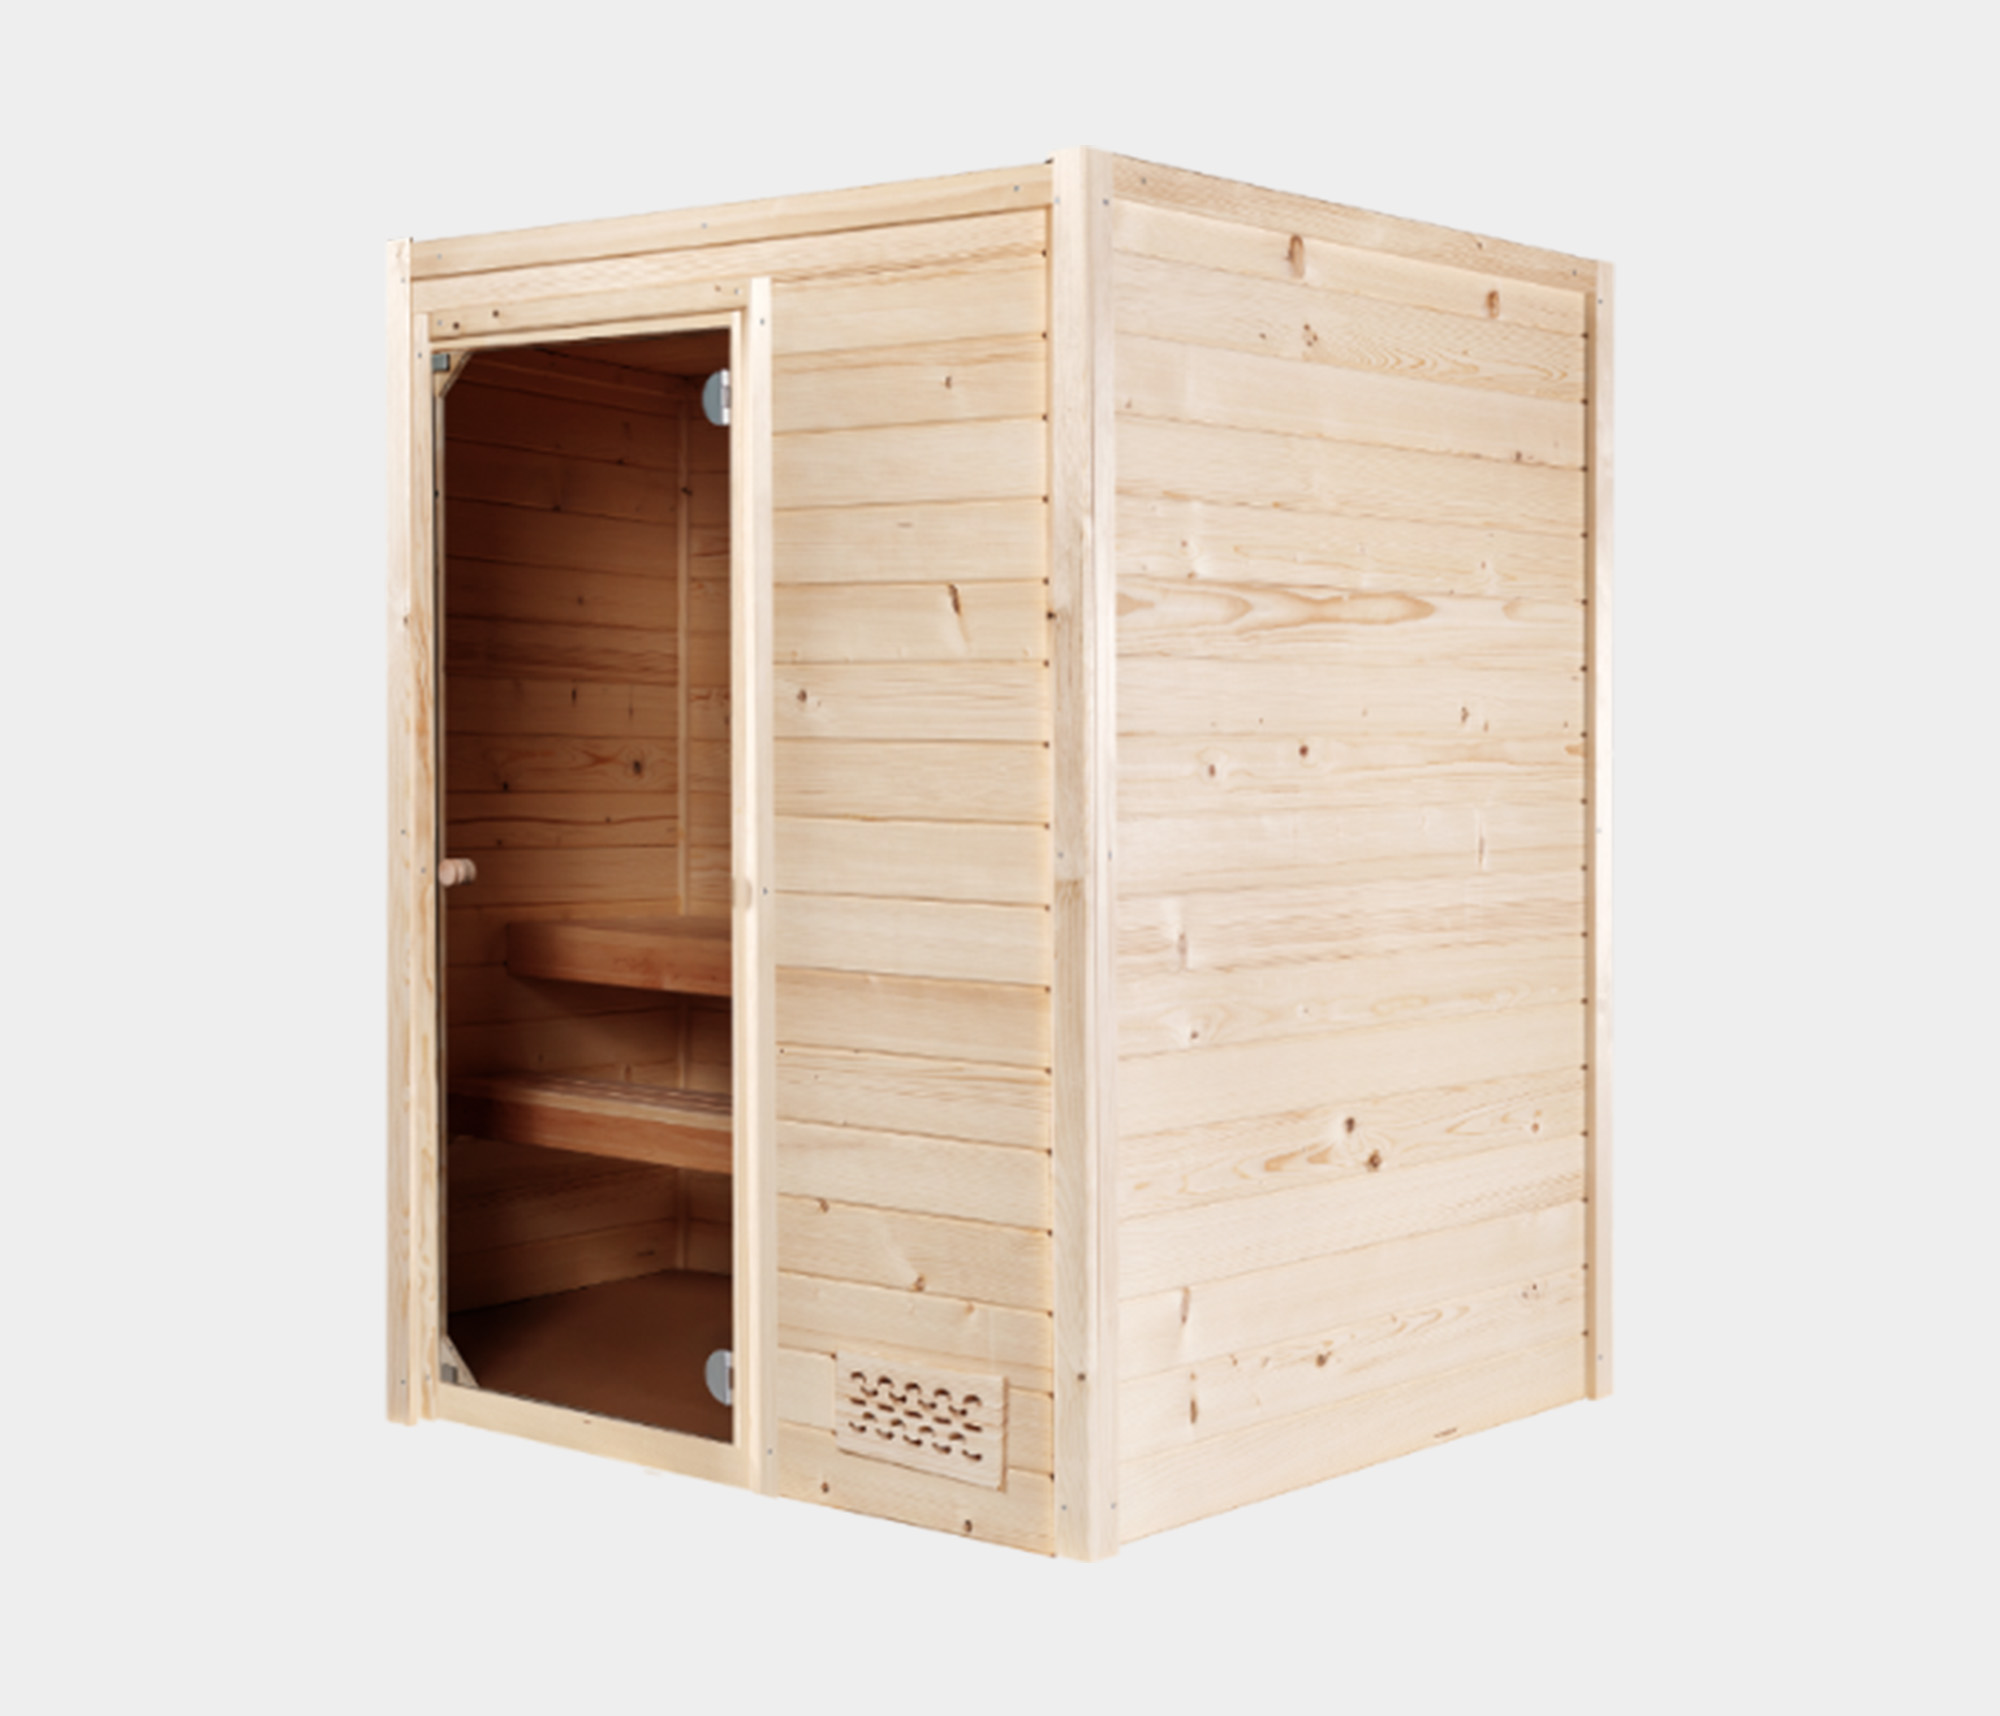 Liten kompakt Bastu / Sauna Tampere HS1 från Hanscraft. Bastu inomhus med plats för 2 personer. Levereras färdigmonterad eller som bastubyggsats.